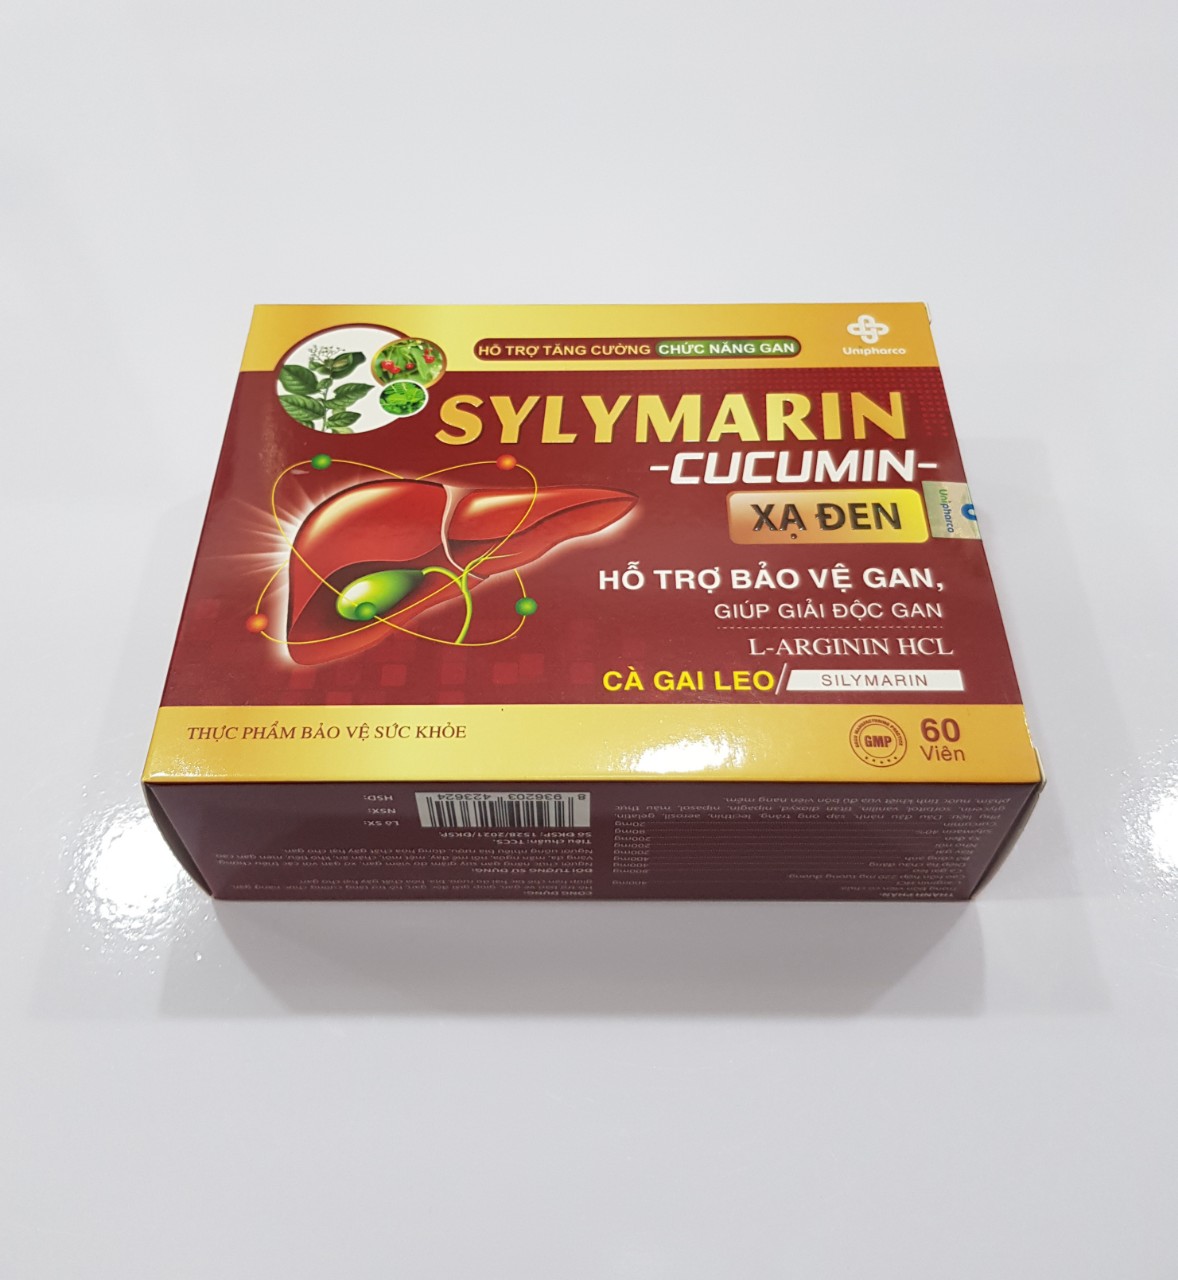 Viên Sylymarin - Cucumin xạ đen hỗ trợ bảo vệ gan, giải độc gan,tăng cường chức năng gan